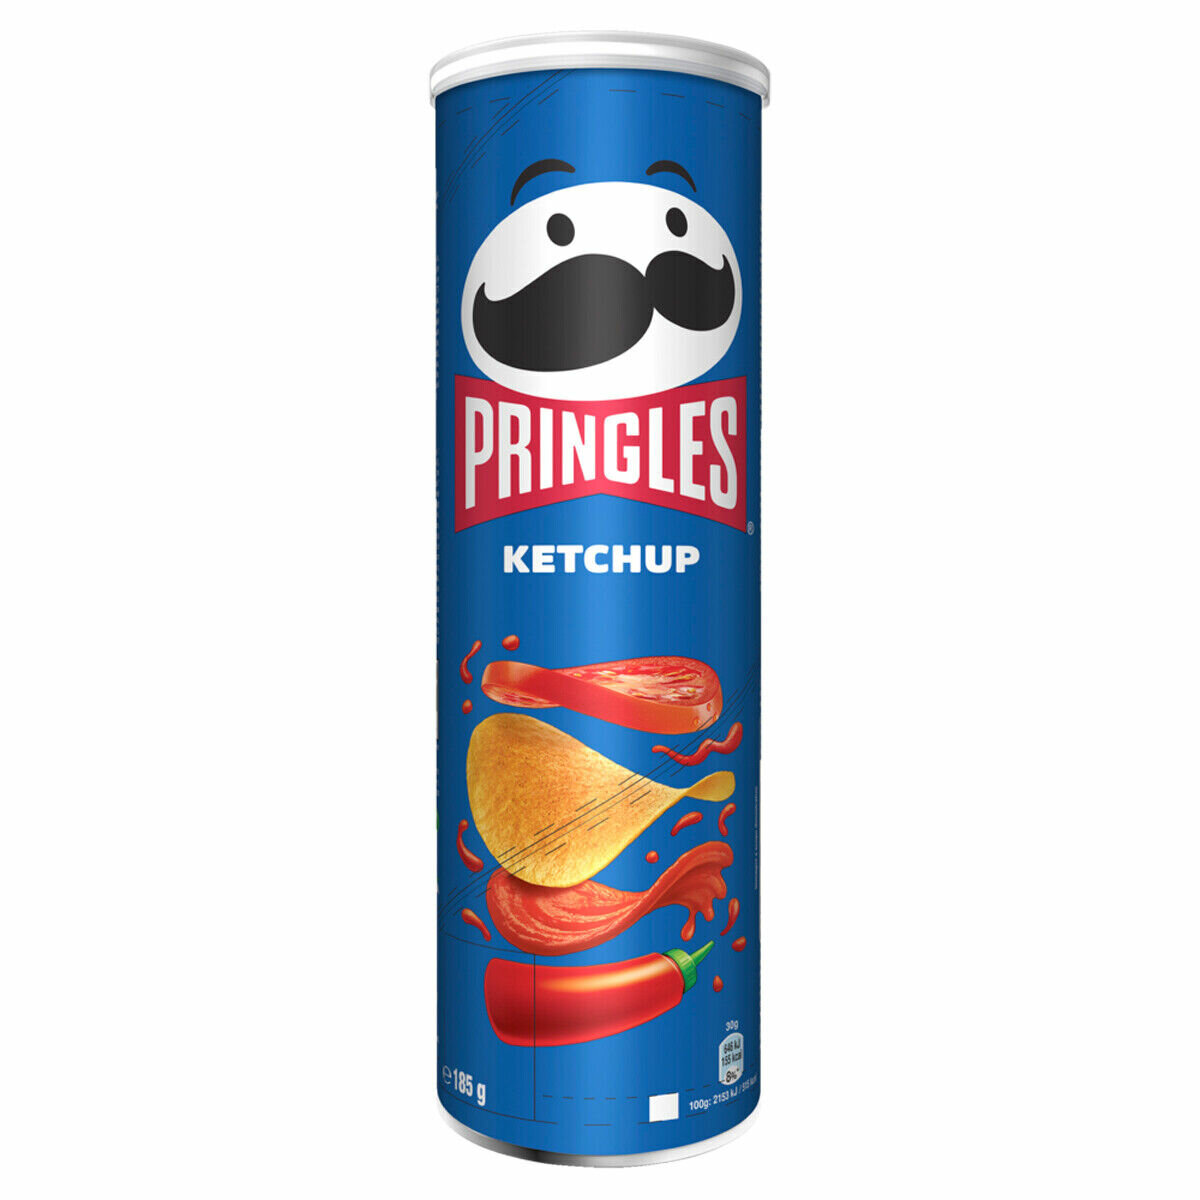 Картофельные чипсы Pringles Ketchup, со вкусом кетчупа, 165 гр